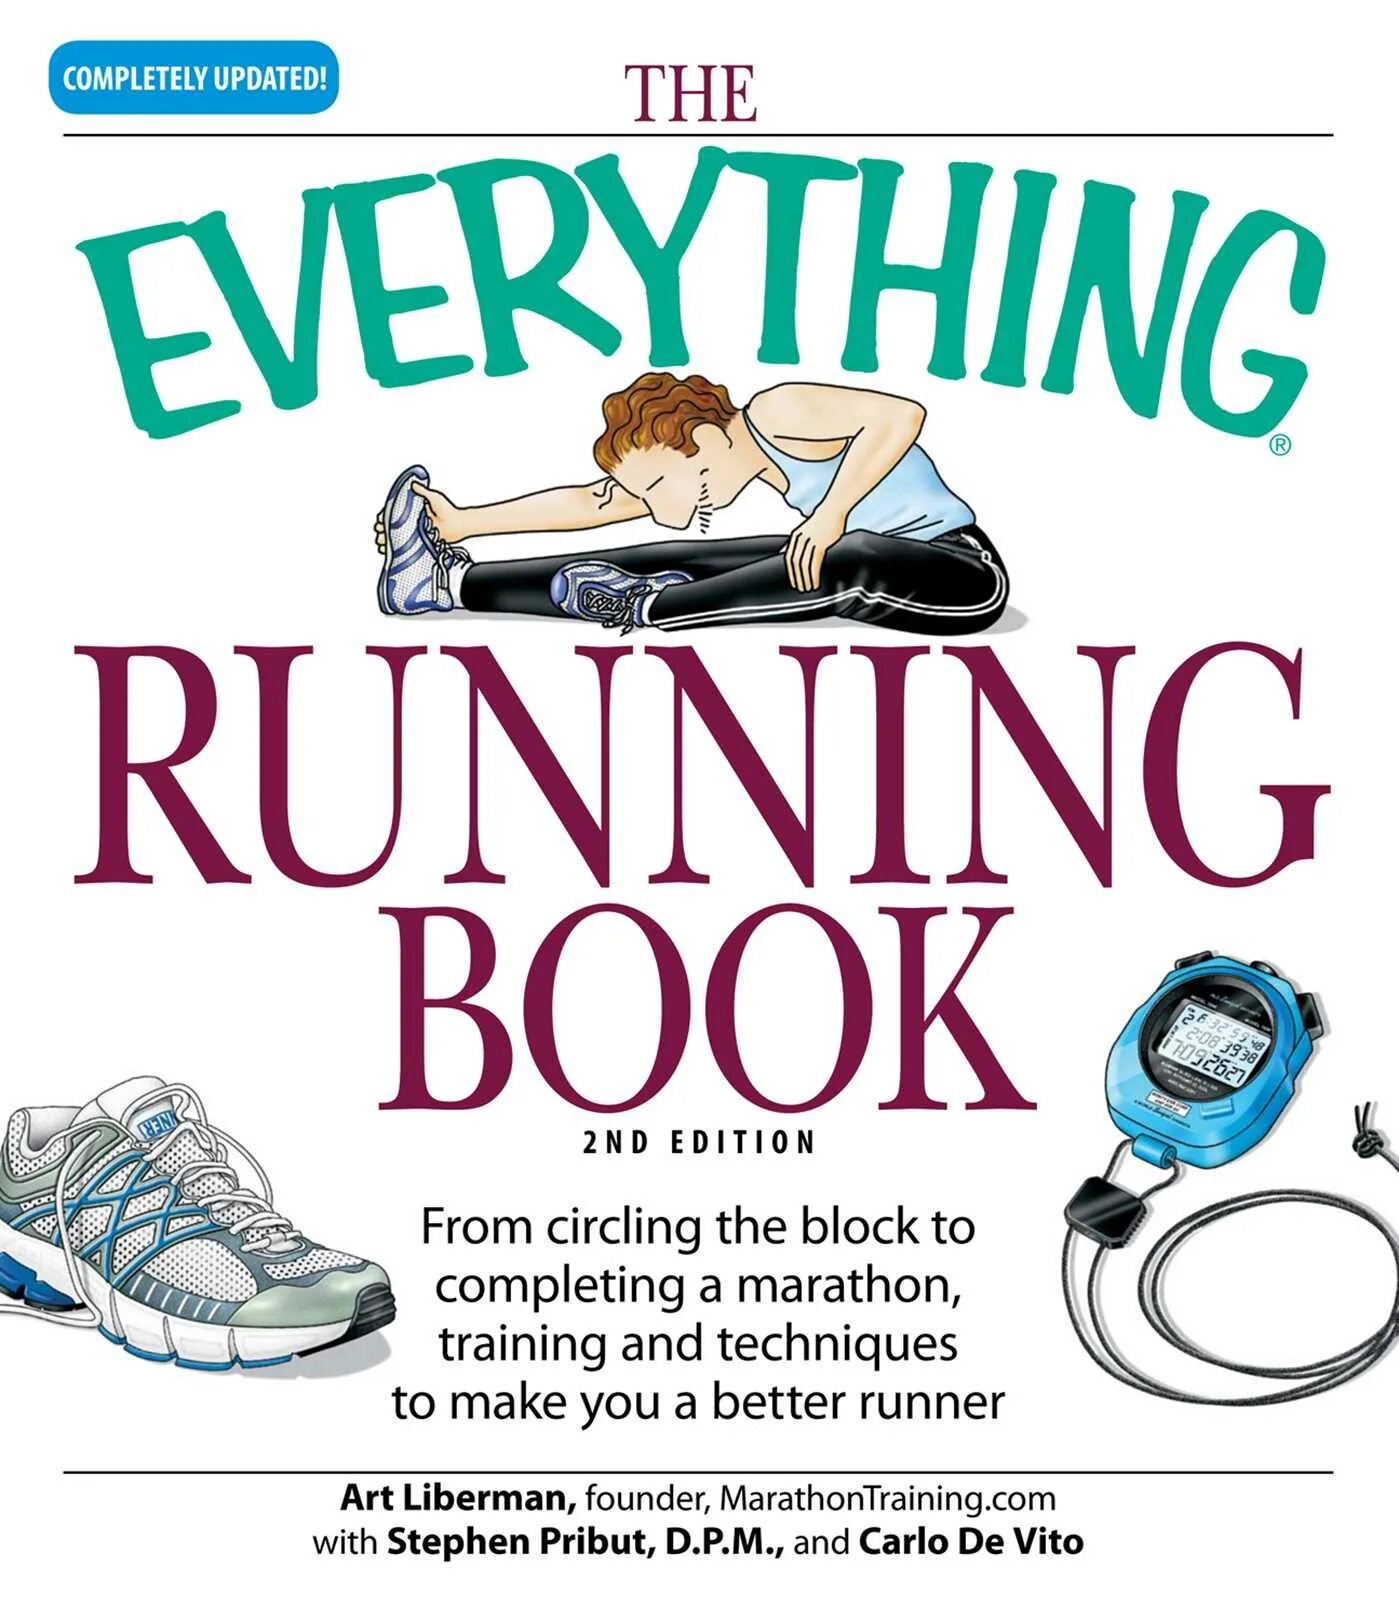 Everything everything книга. The Running book. Books Run. Everything running